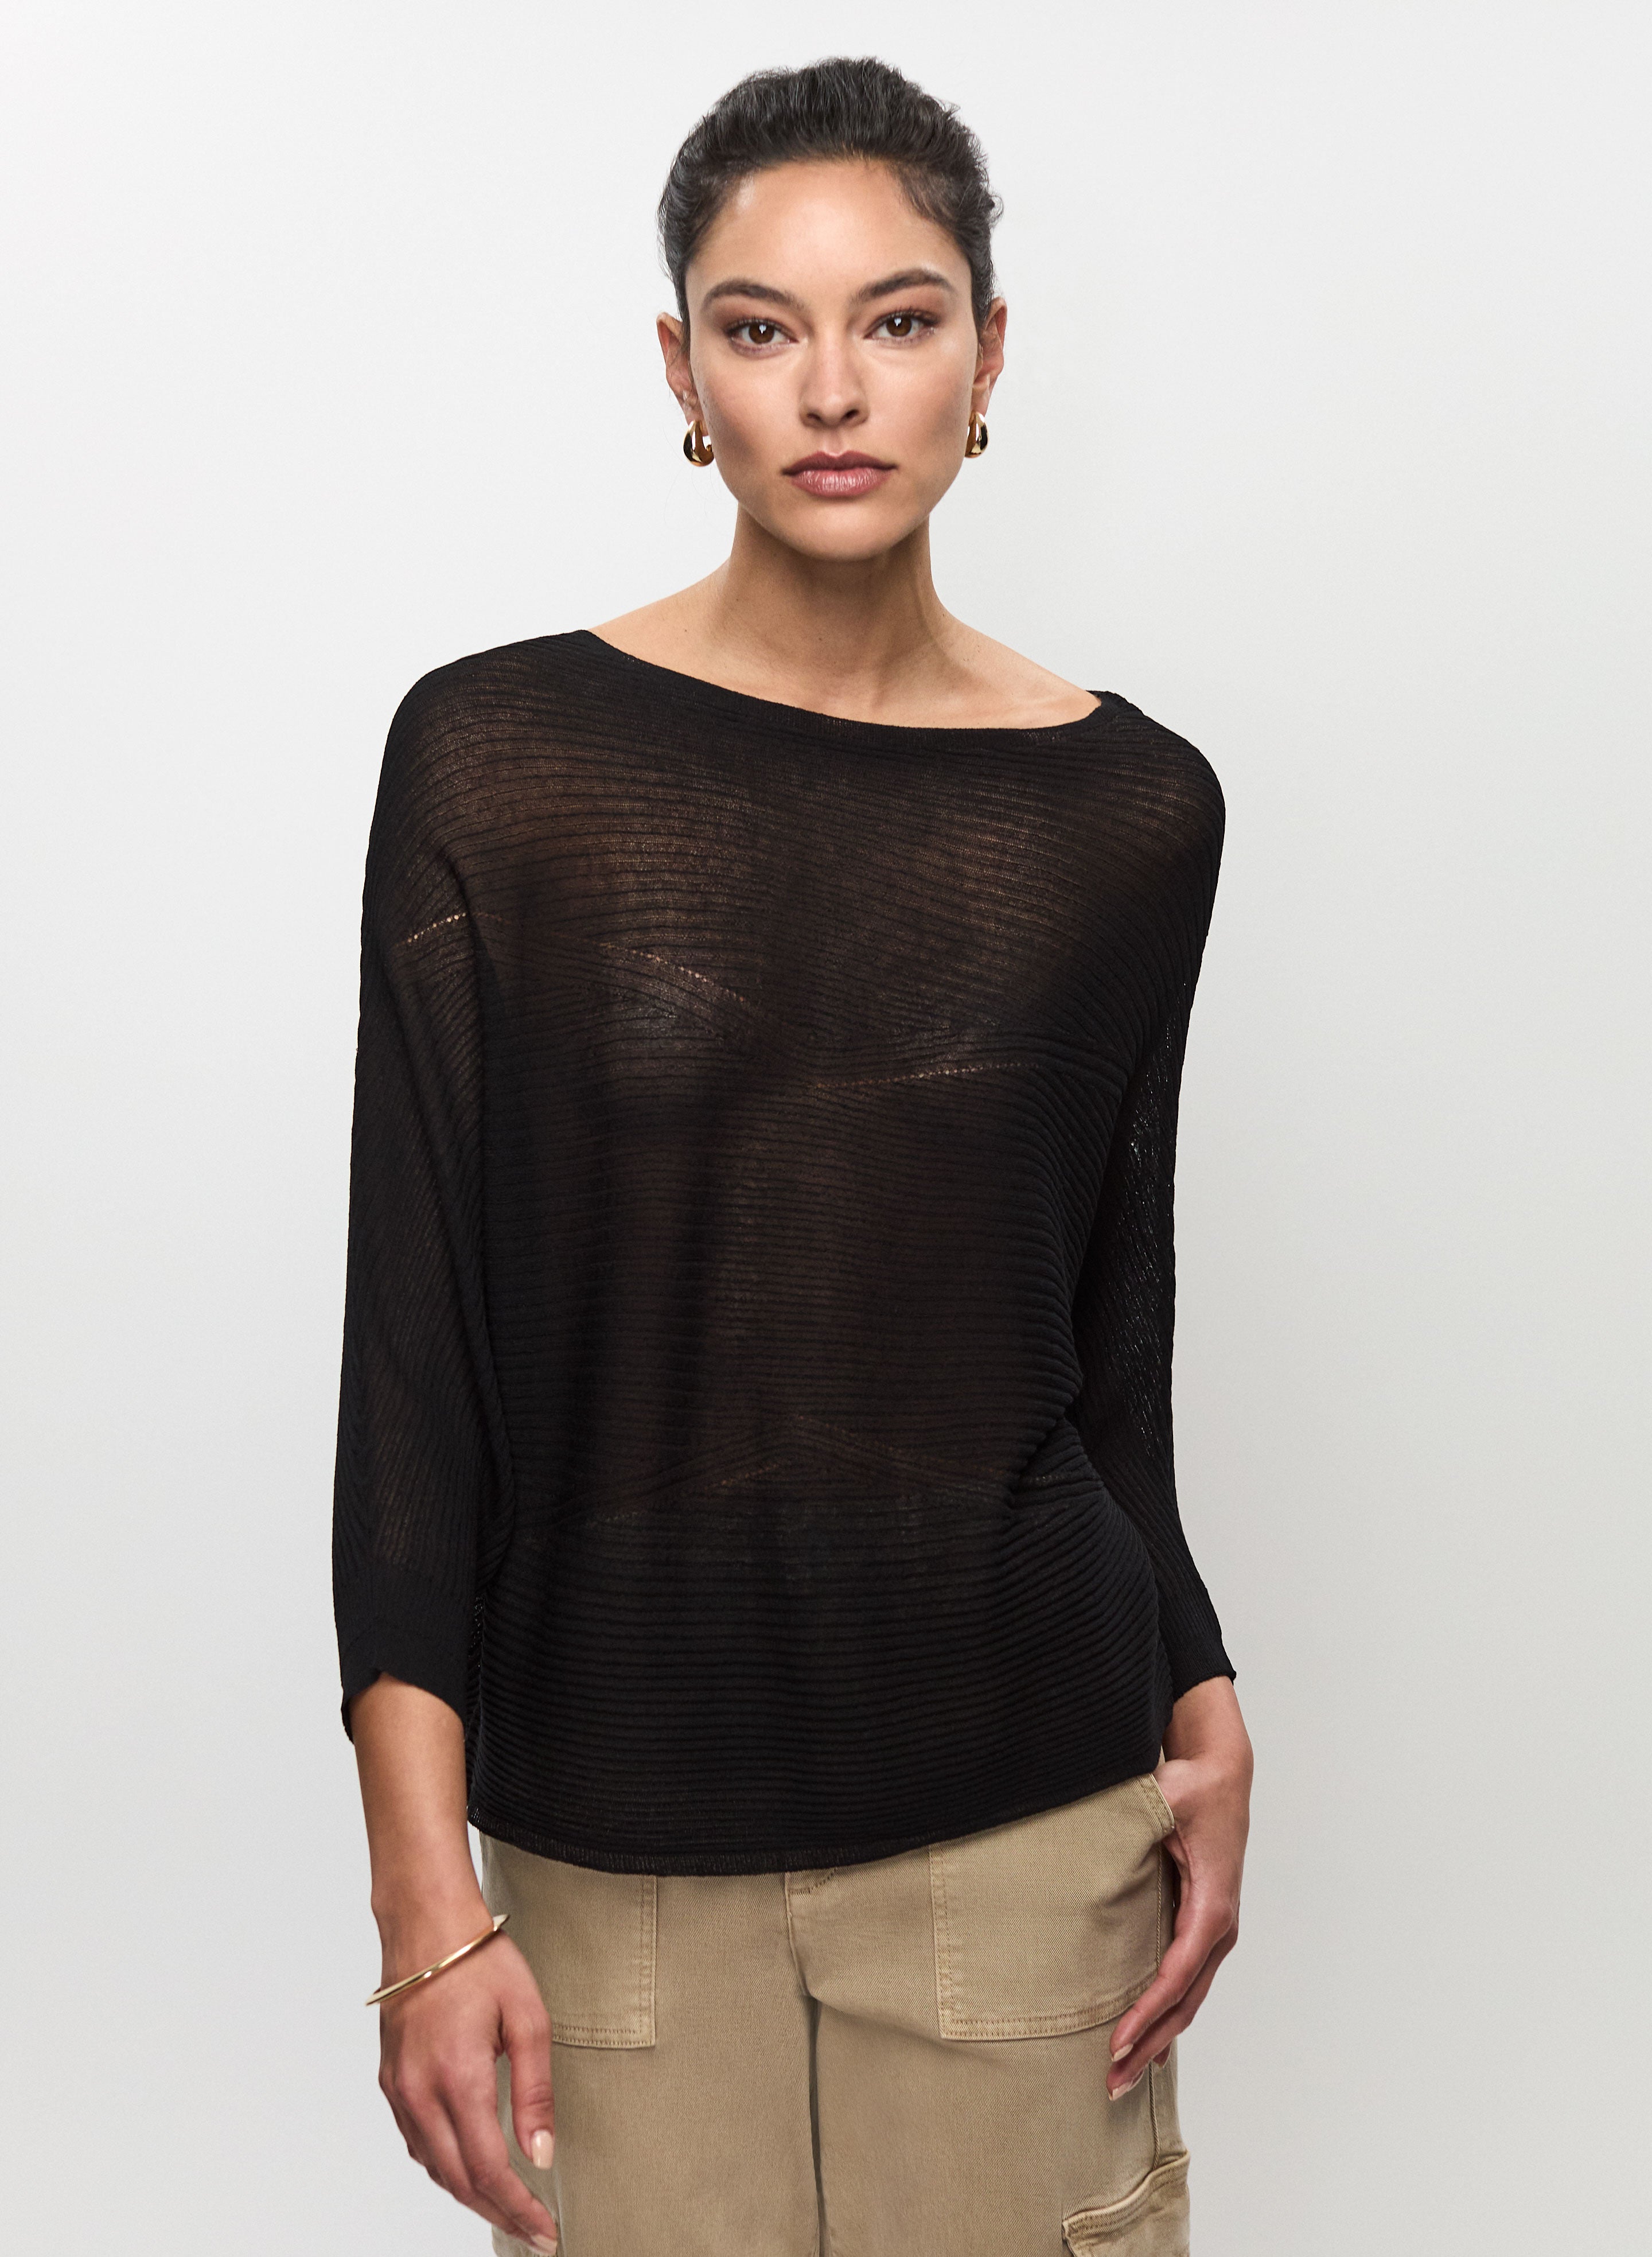 Verla Black Dolman Sleeve Sweater Top  Dolman sleeve sweater, Trendy  clothes for women, Clothes